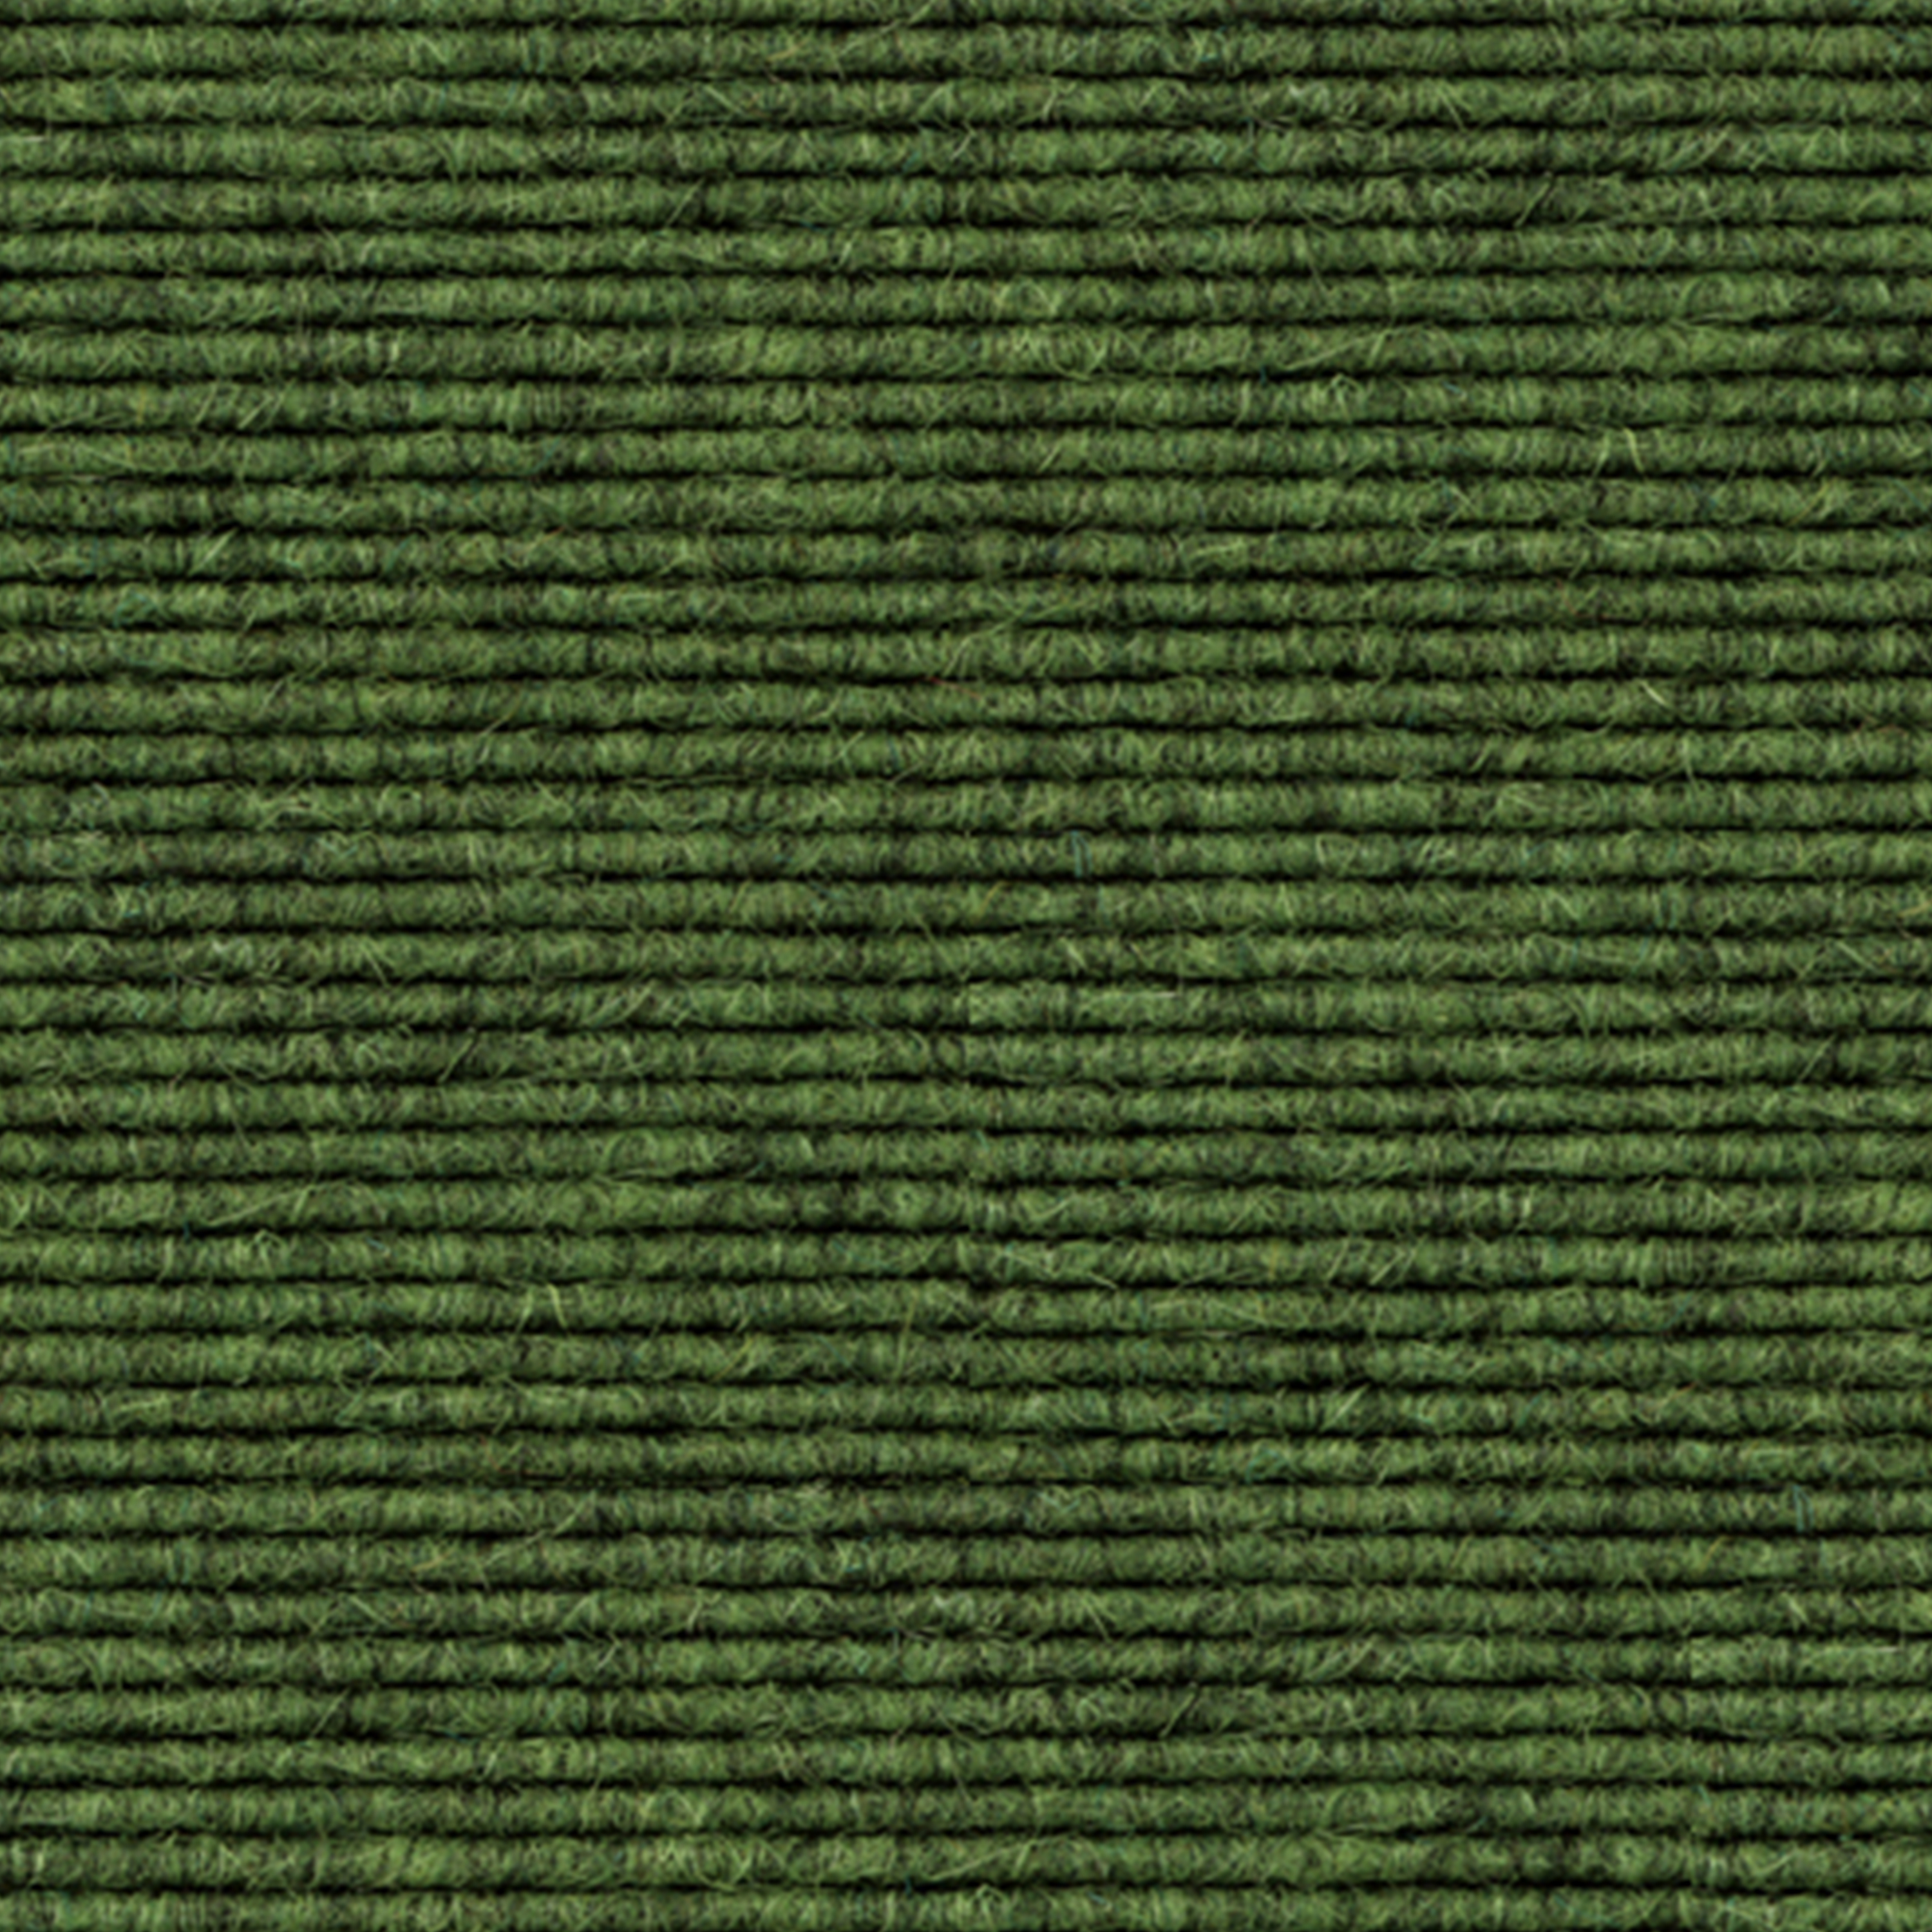 tretford-Teppich 'Moos (569)', 3 x 2 m, ungekettelt